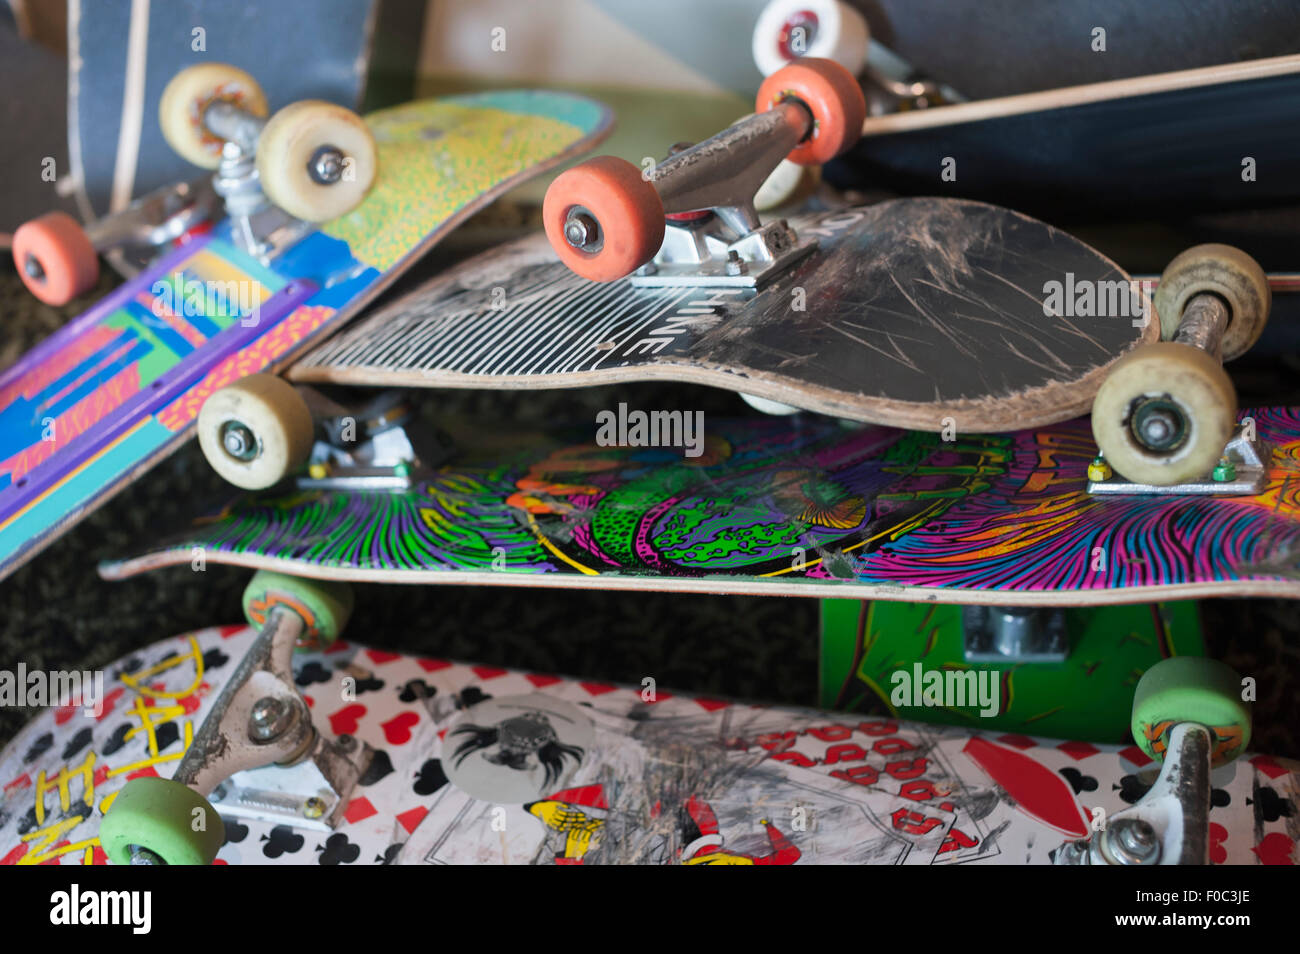 Nahaufnahme des skateboards Stockfoto